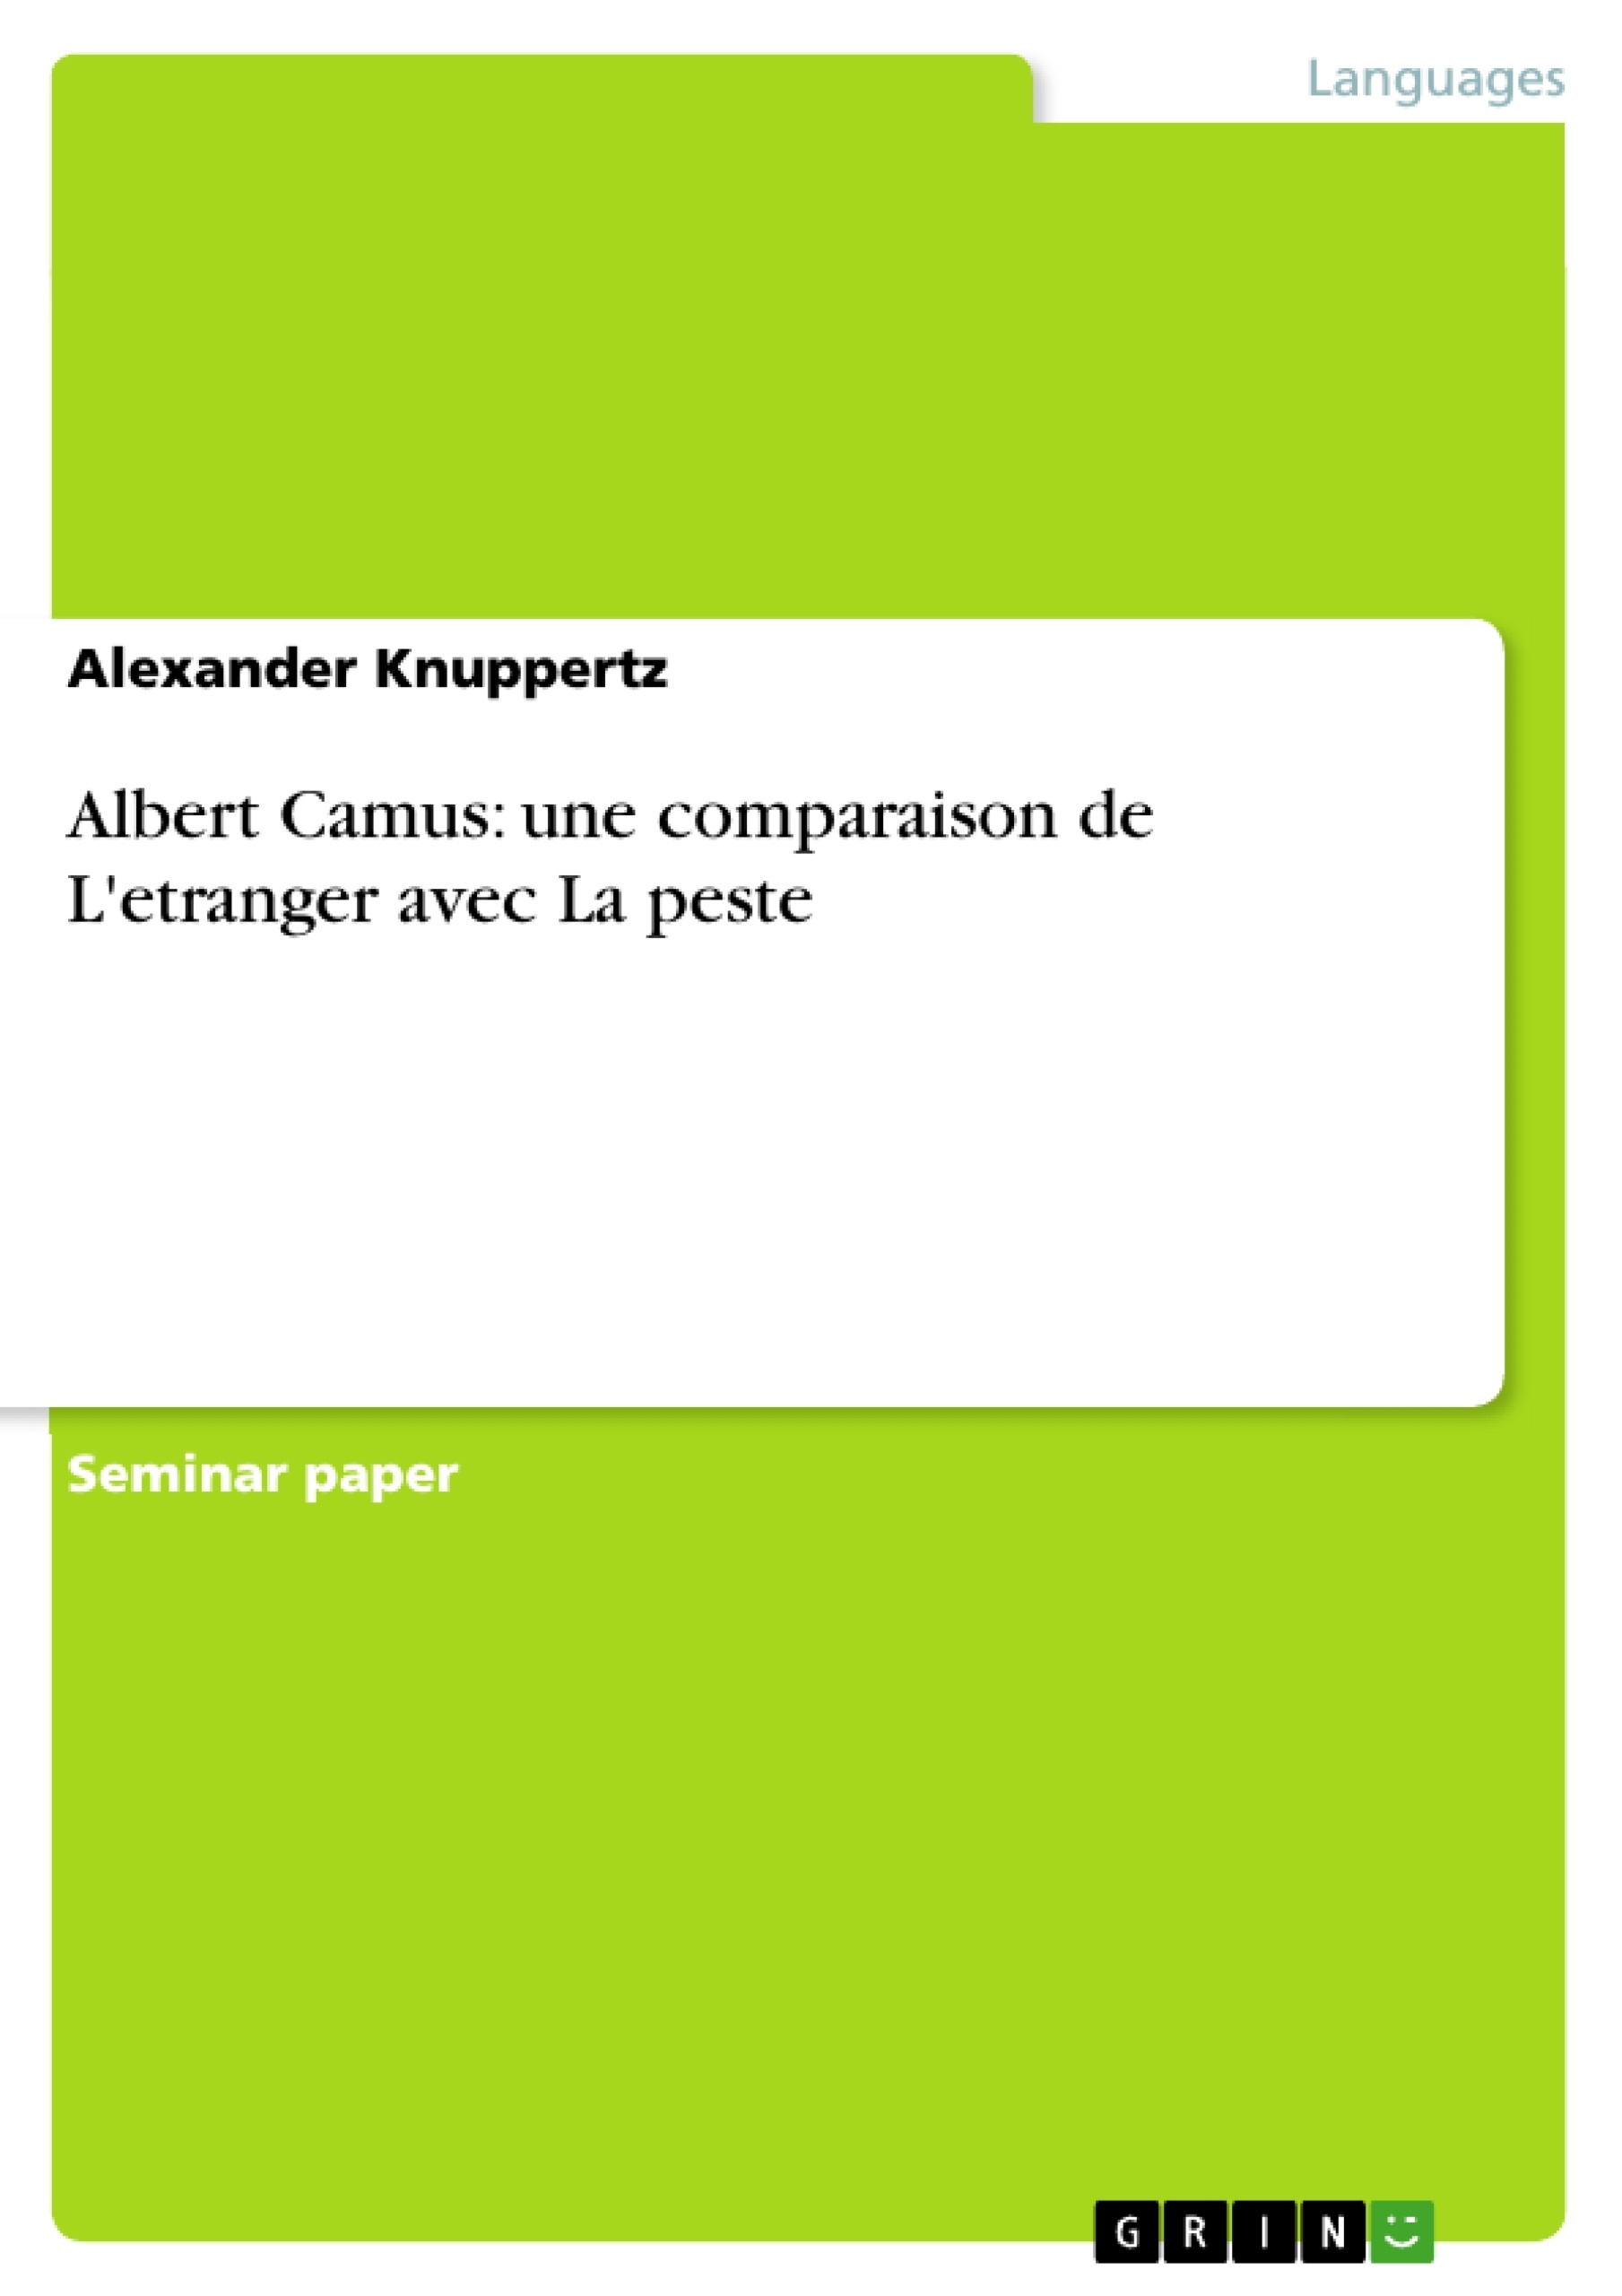 Título: Albert Camus: une comparaison de L'etranger avec La peste